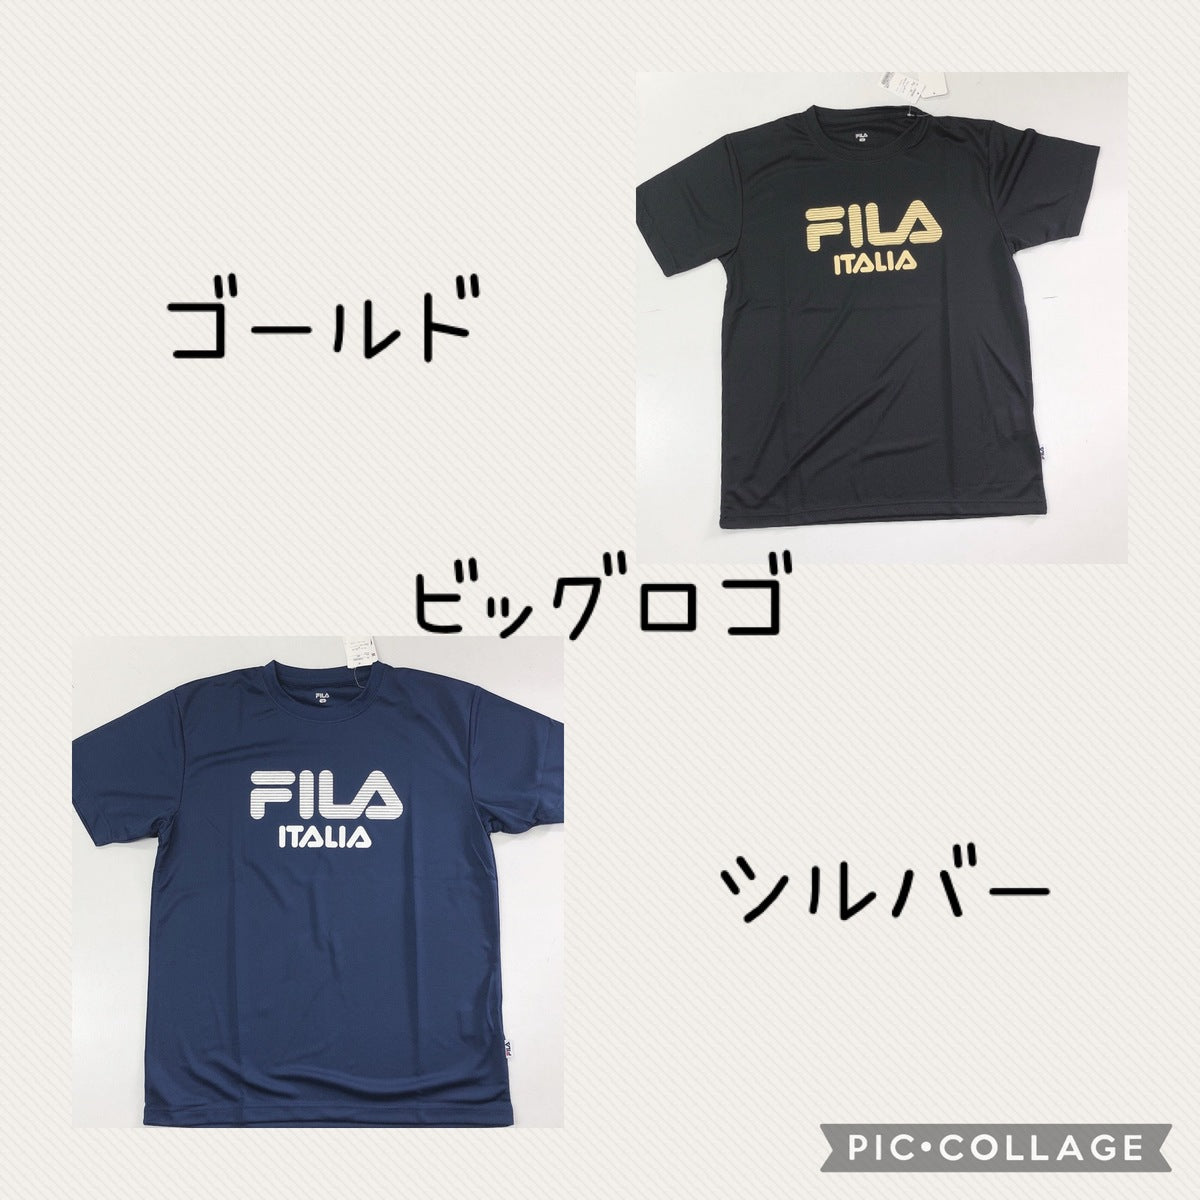 【FILA】フィラ Tシャツ スポーツウェア M サイズ ネイビー ブラック 黒 DRY ドライ加工生地 夏